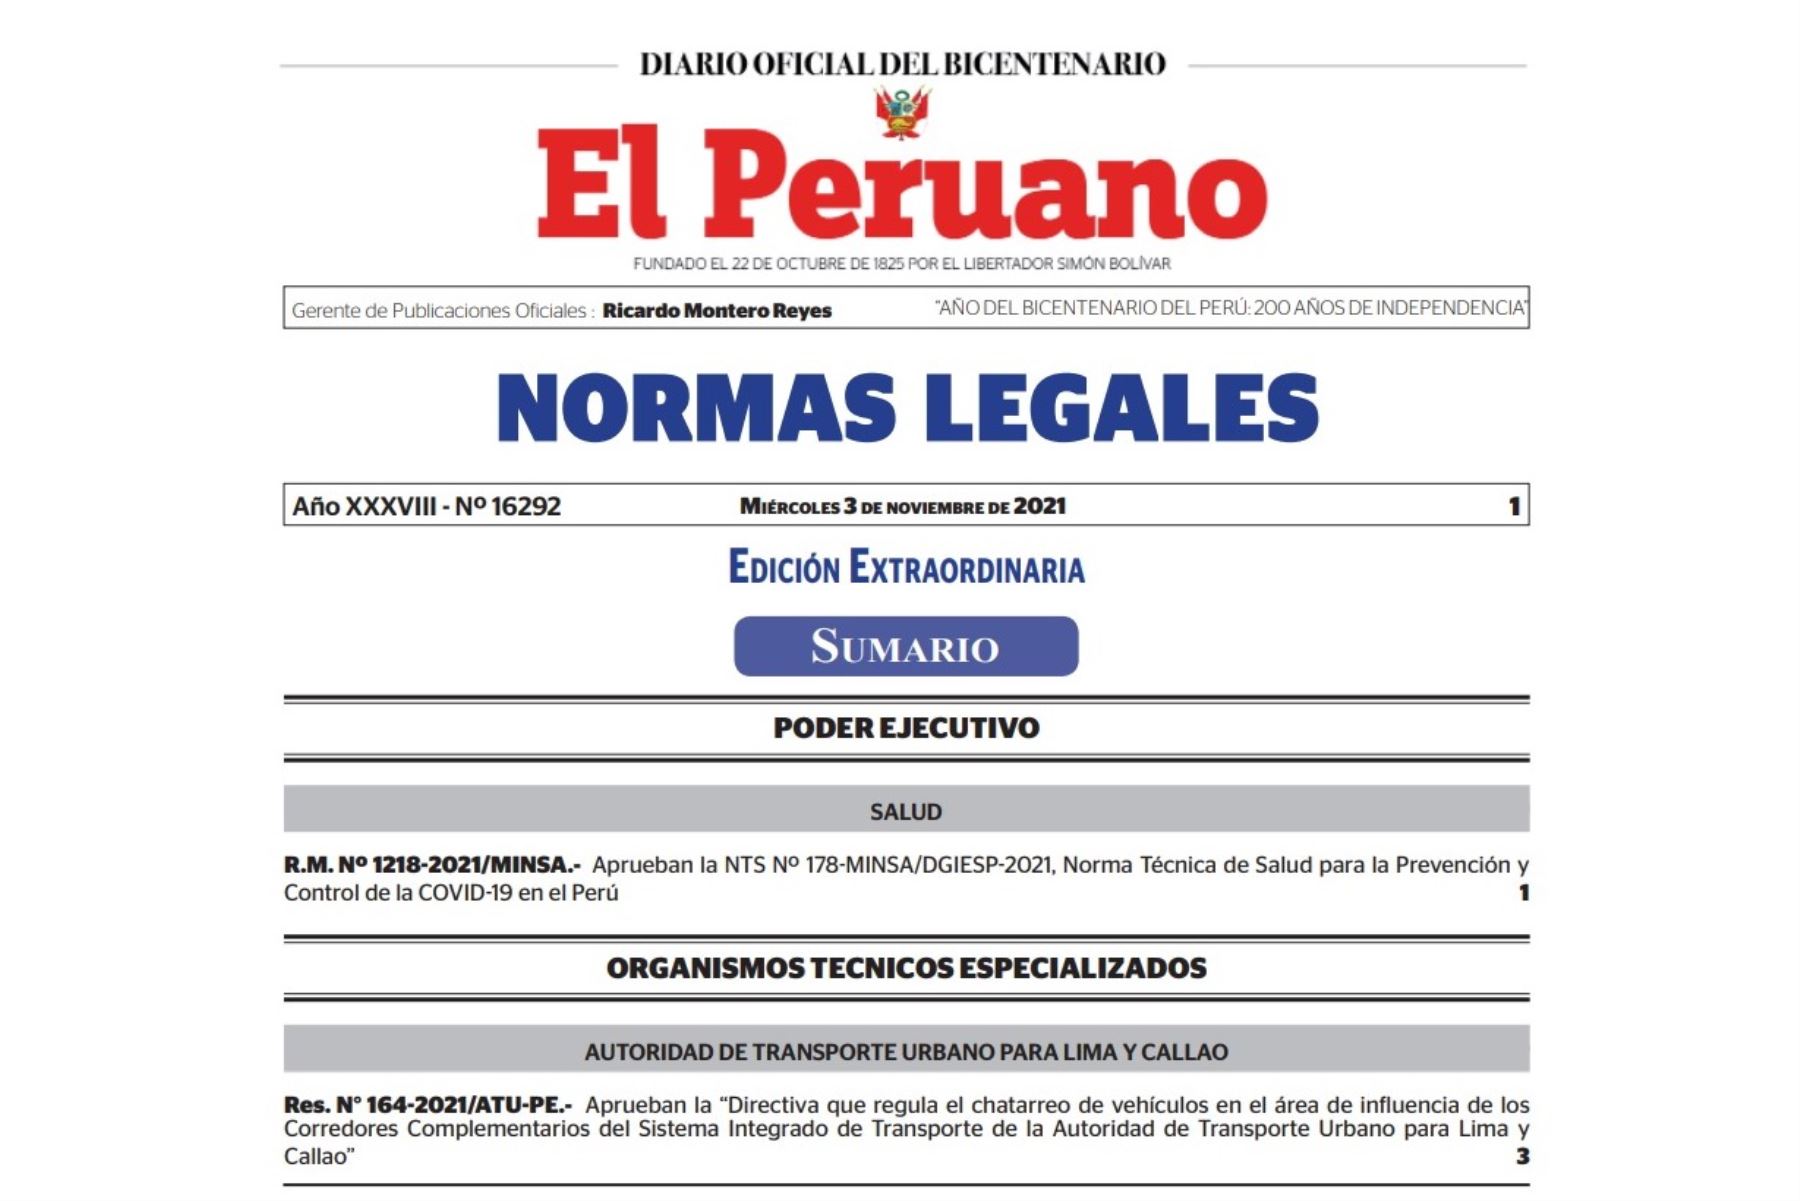 Edición extraordinaria del cuadernillo de Normas Legales del Diario Oficial El Peruano.